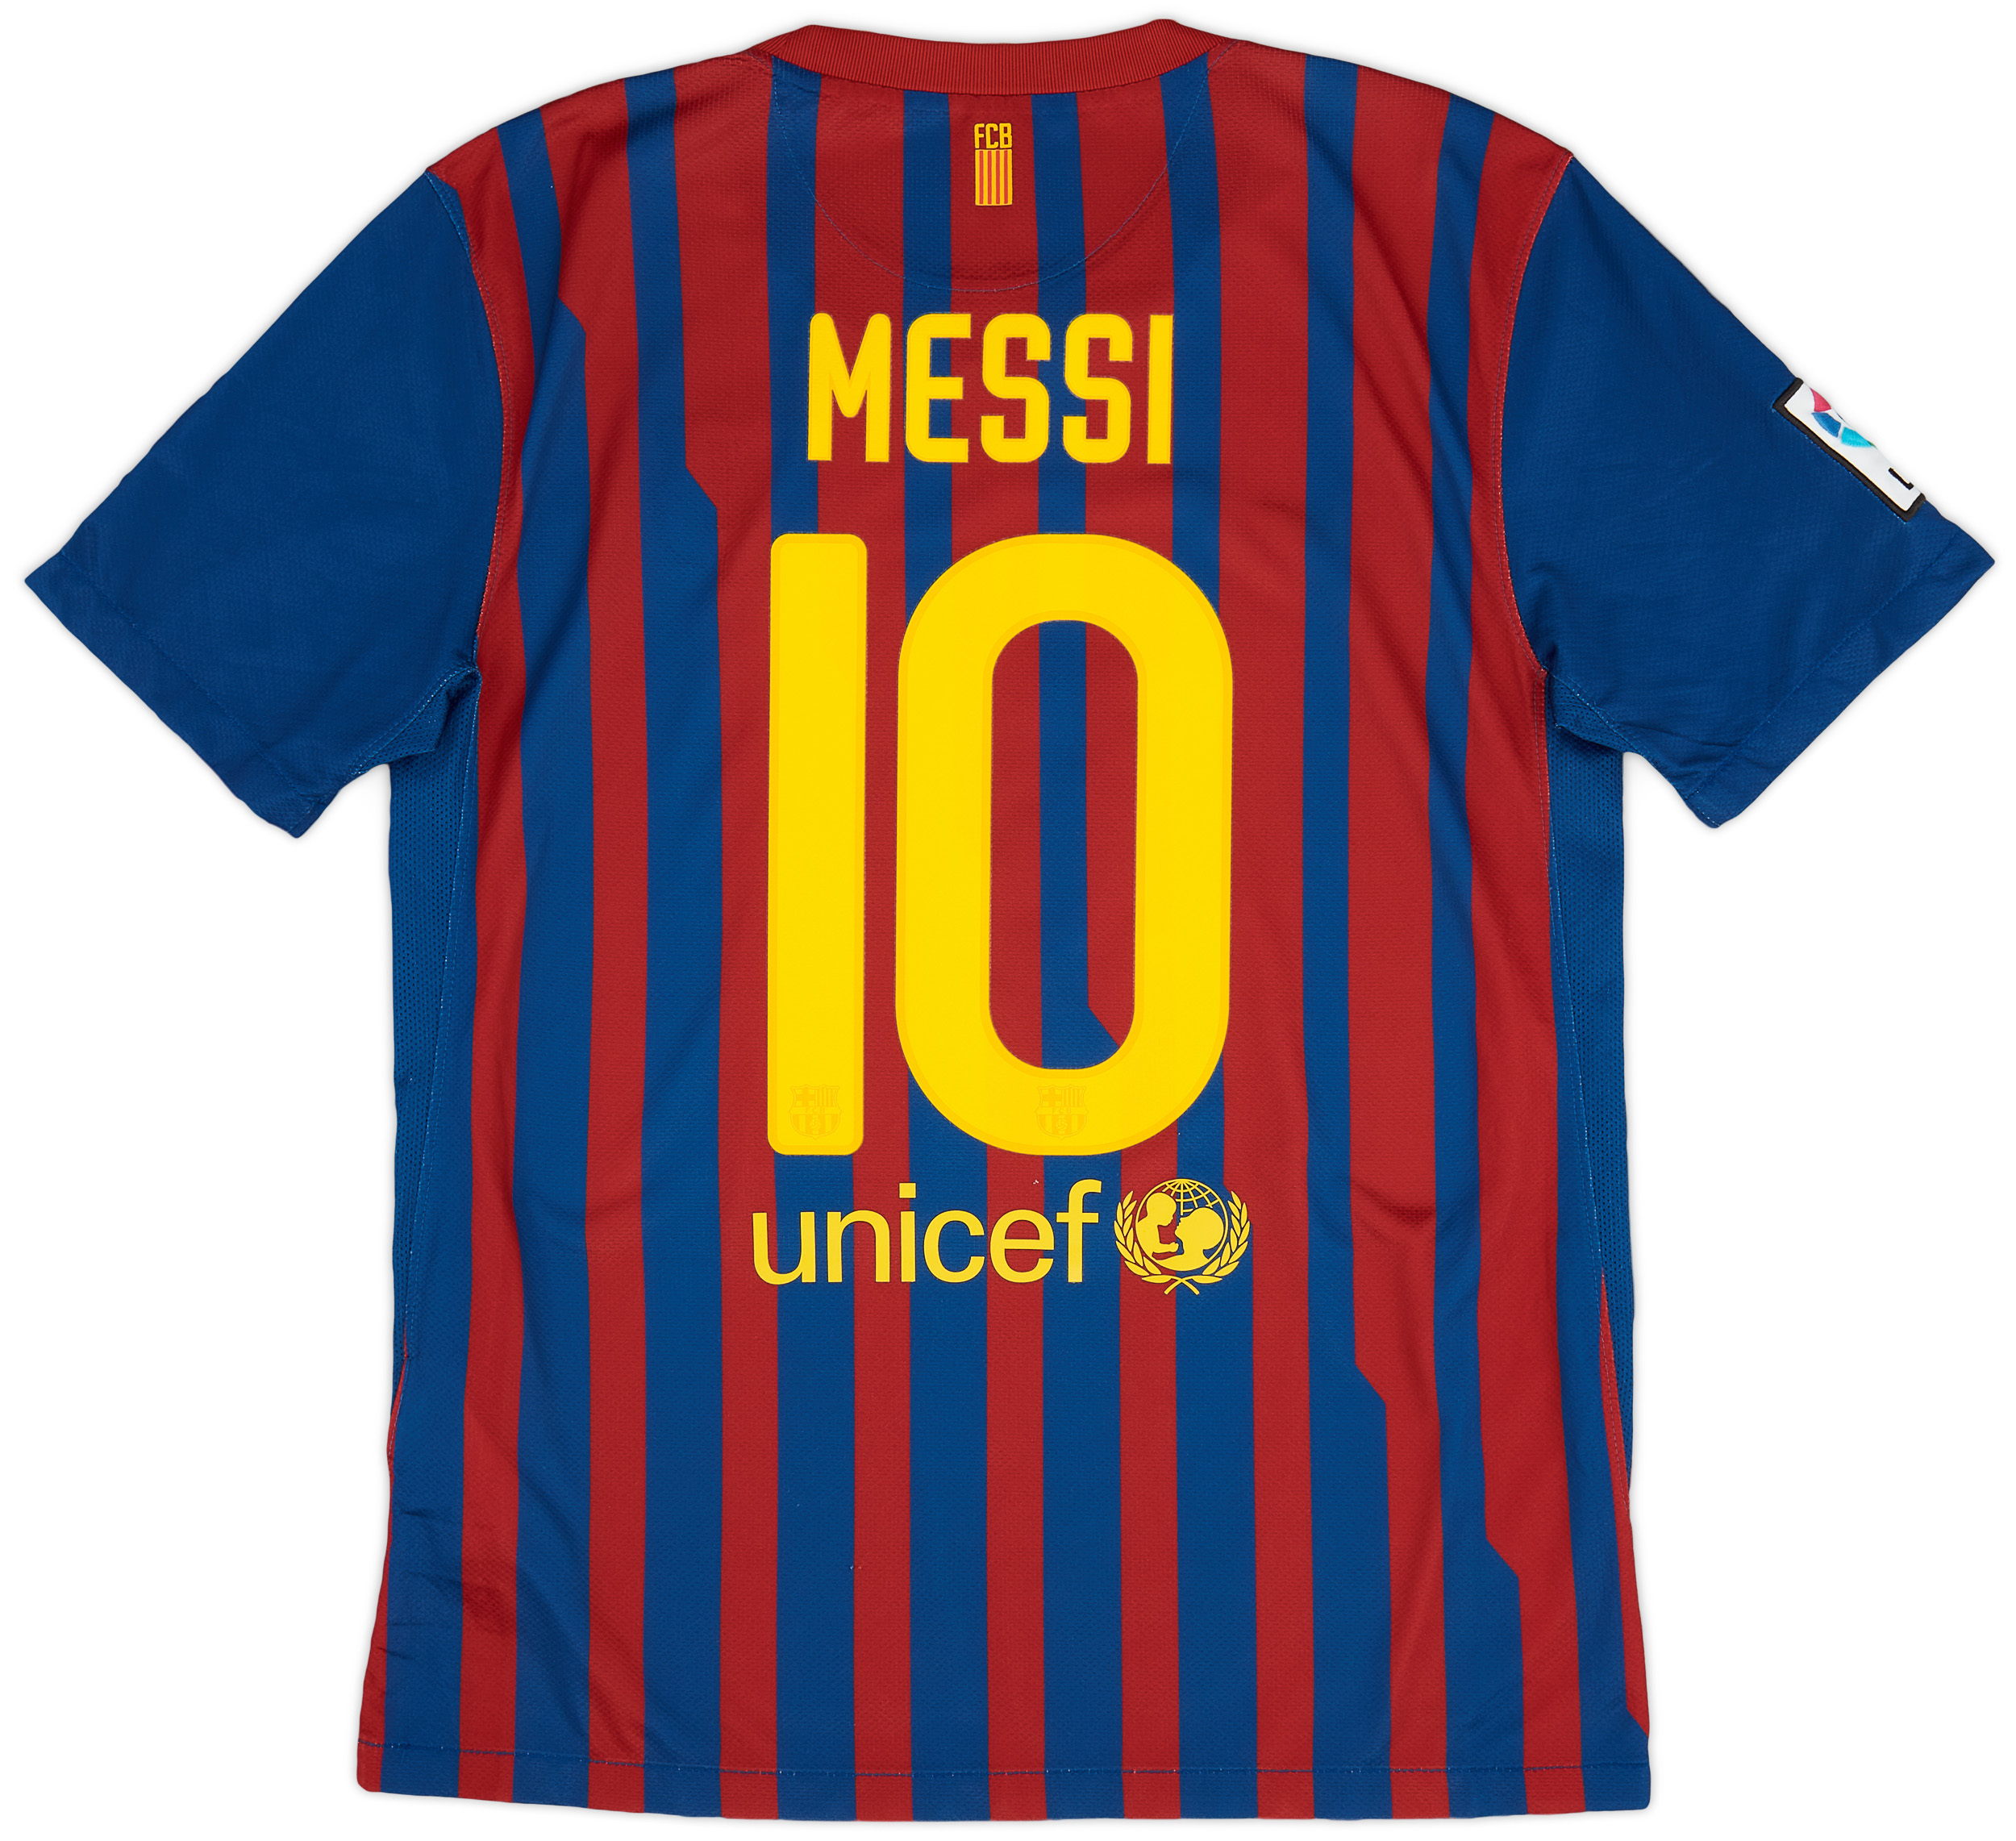 2011-12 Barcelona Home Shirt Messi #10 - 8/10 - (M)